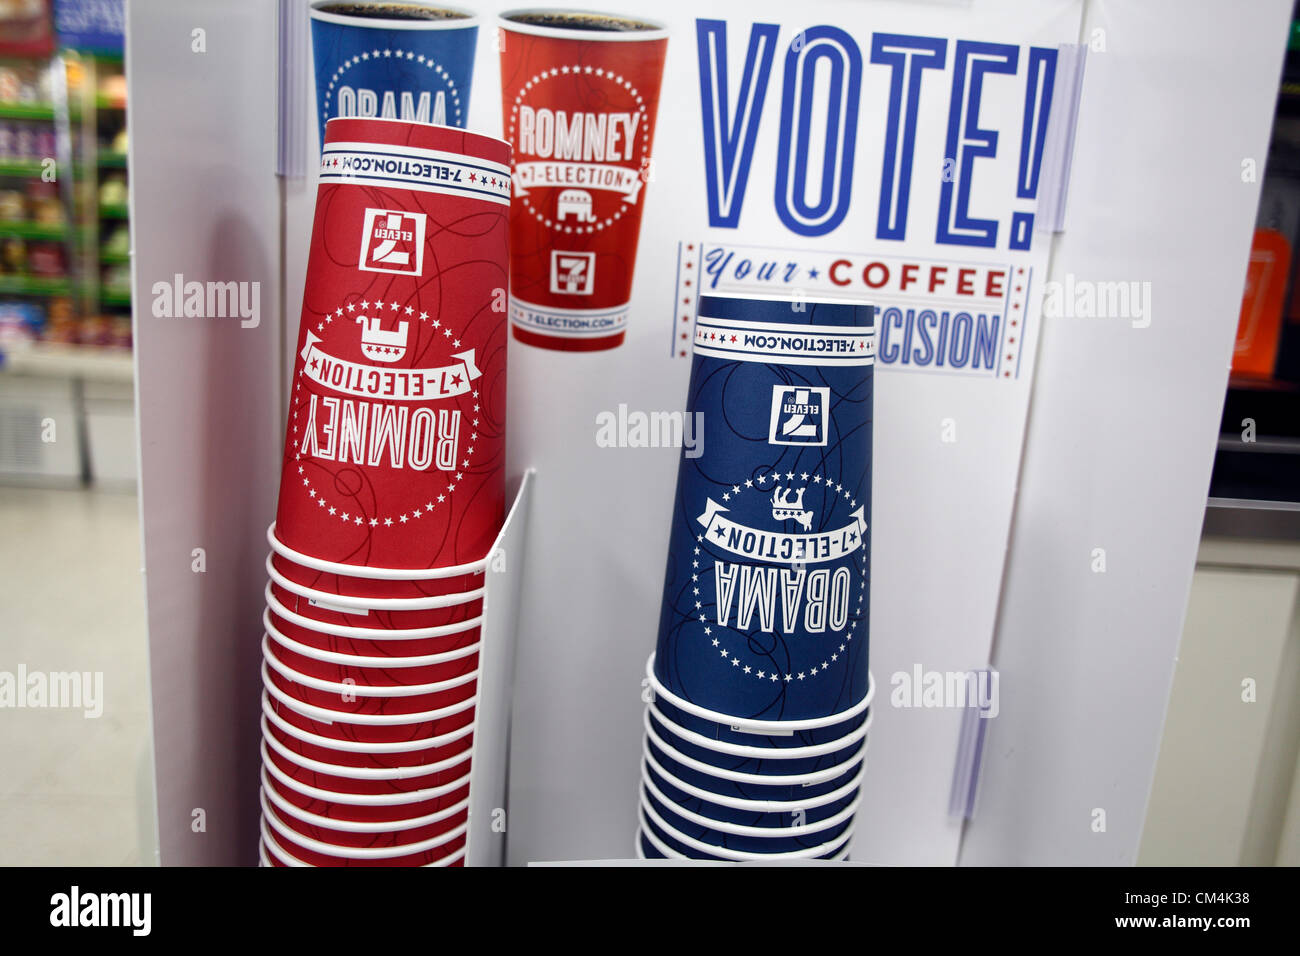 Les élections présidentielles, 7 11 Le dépanneur vous permet de voter avec le café, Obama ou Romney. Septembre 2012. Banque D'Images